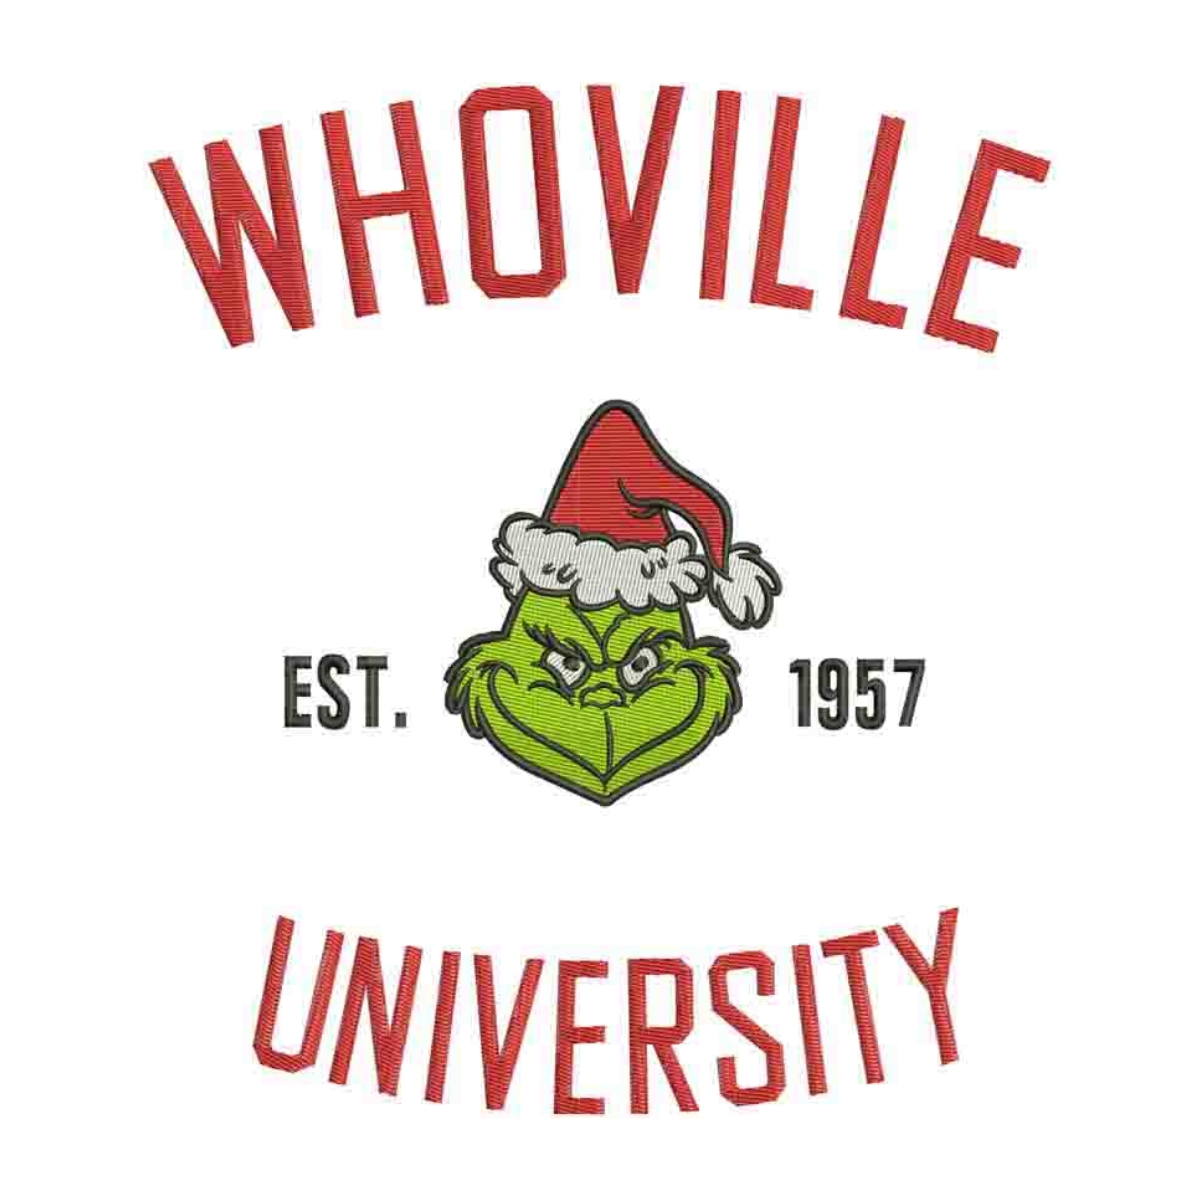 Whoville University Sweatshirt Hoodie